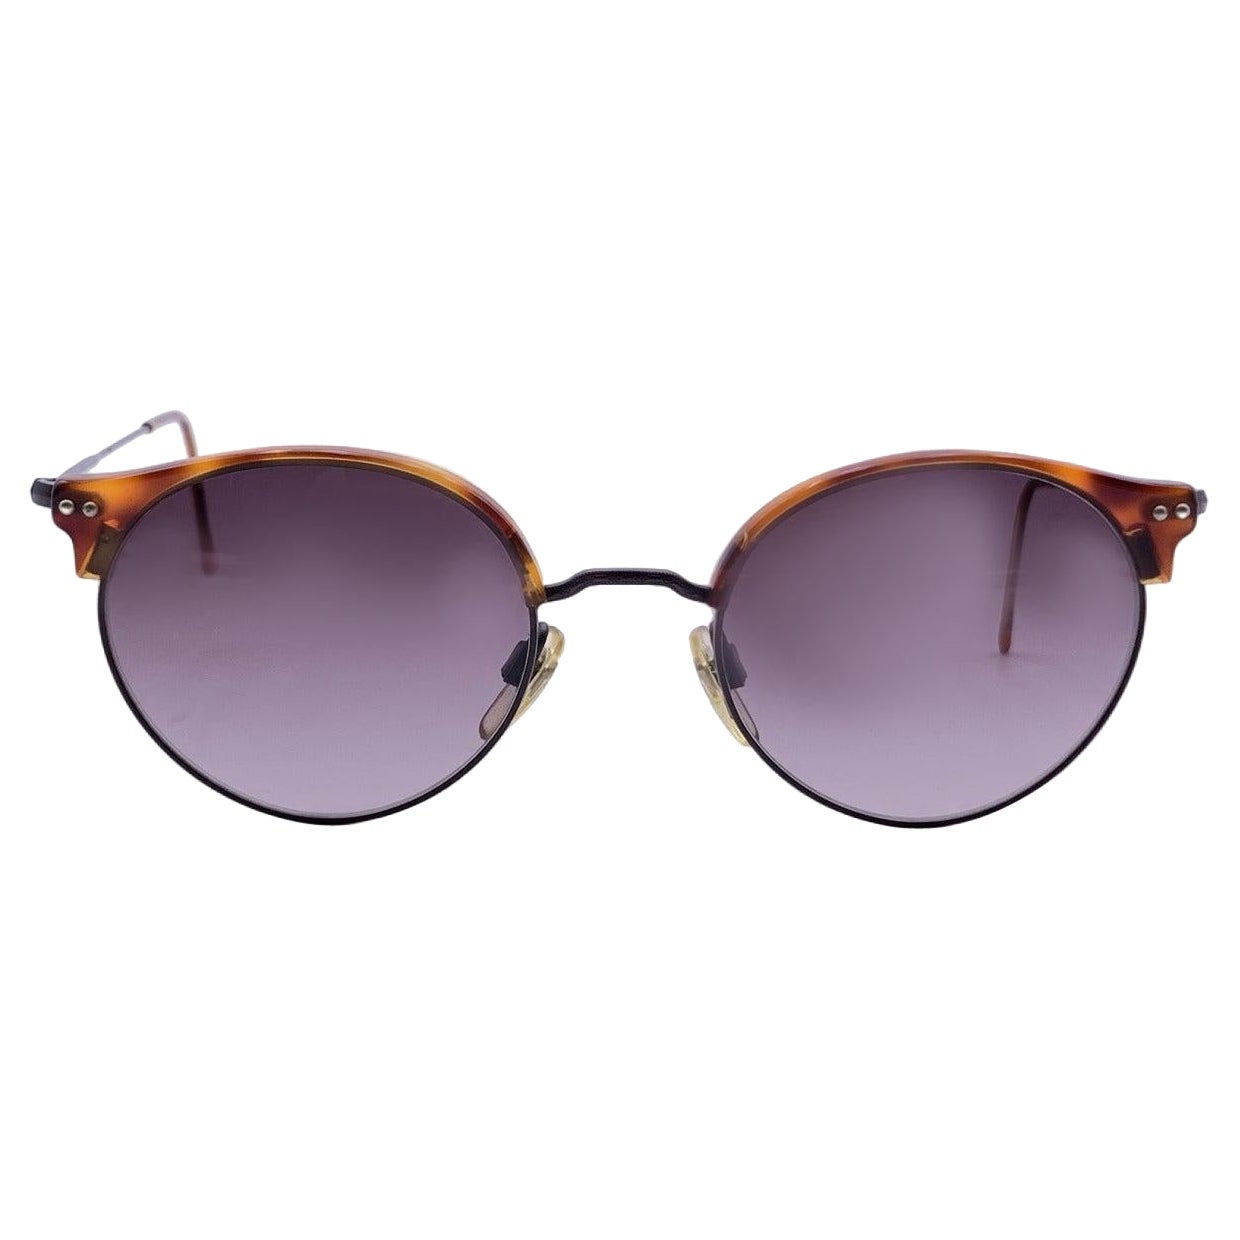 Giorgio Armani Vintage Brown Sunglasses Mod. 377 col. 015 47/20 140mm For Sale